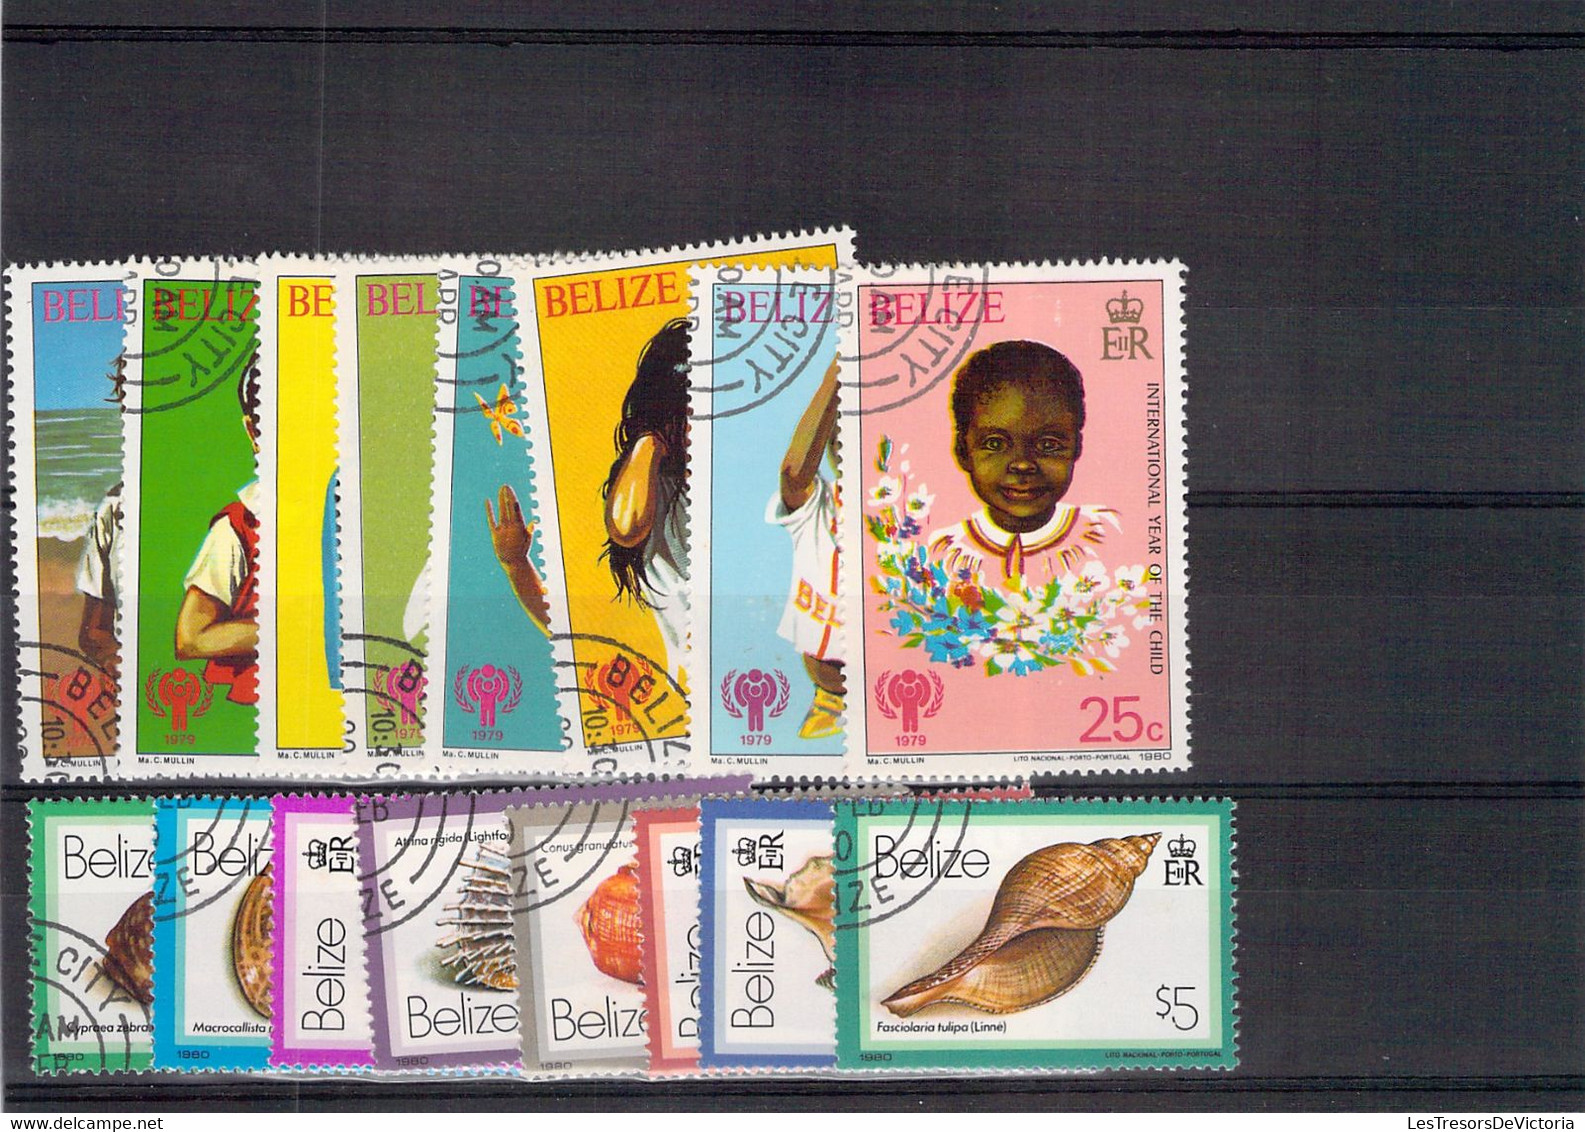 Collection - Lot de timbres et blocs Belize   - PRIX DE DEPART A 10 EUROS !